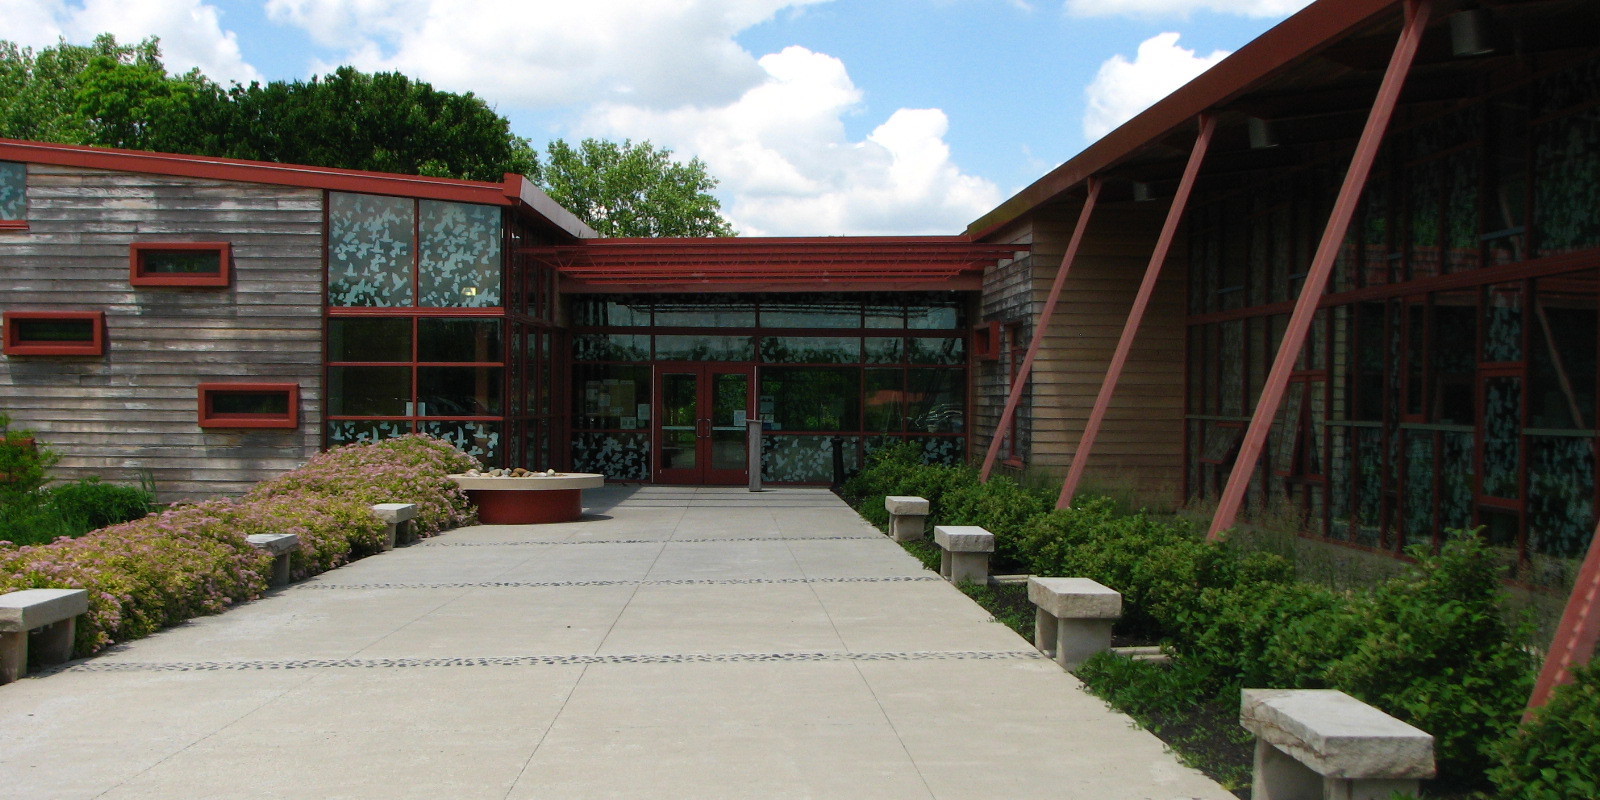 Grange Insurance Audubon Center | ColumbusMakesArt.com (en-US)